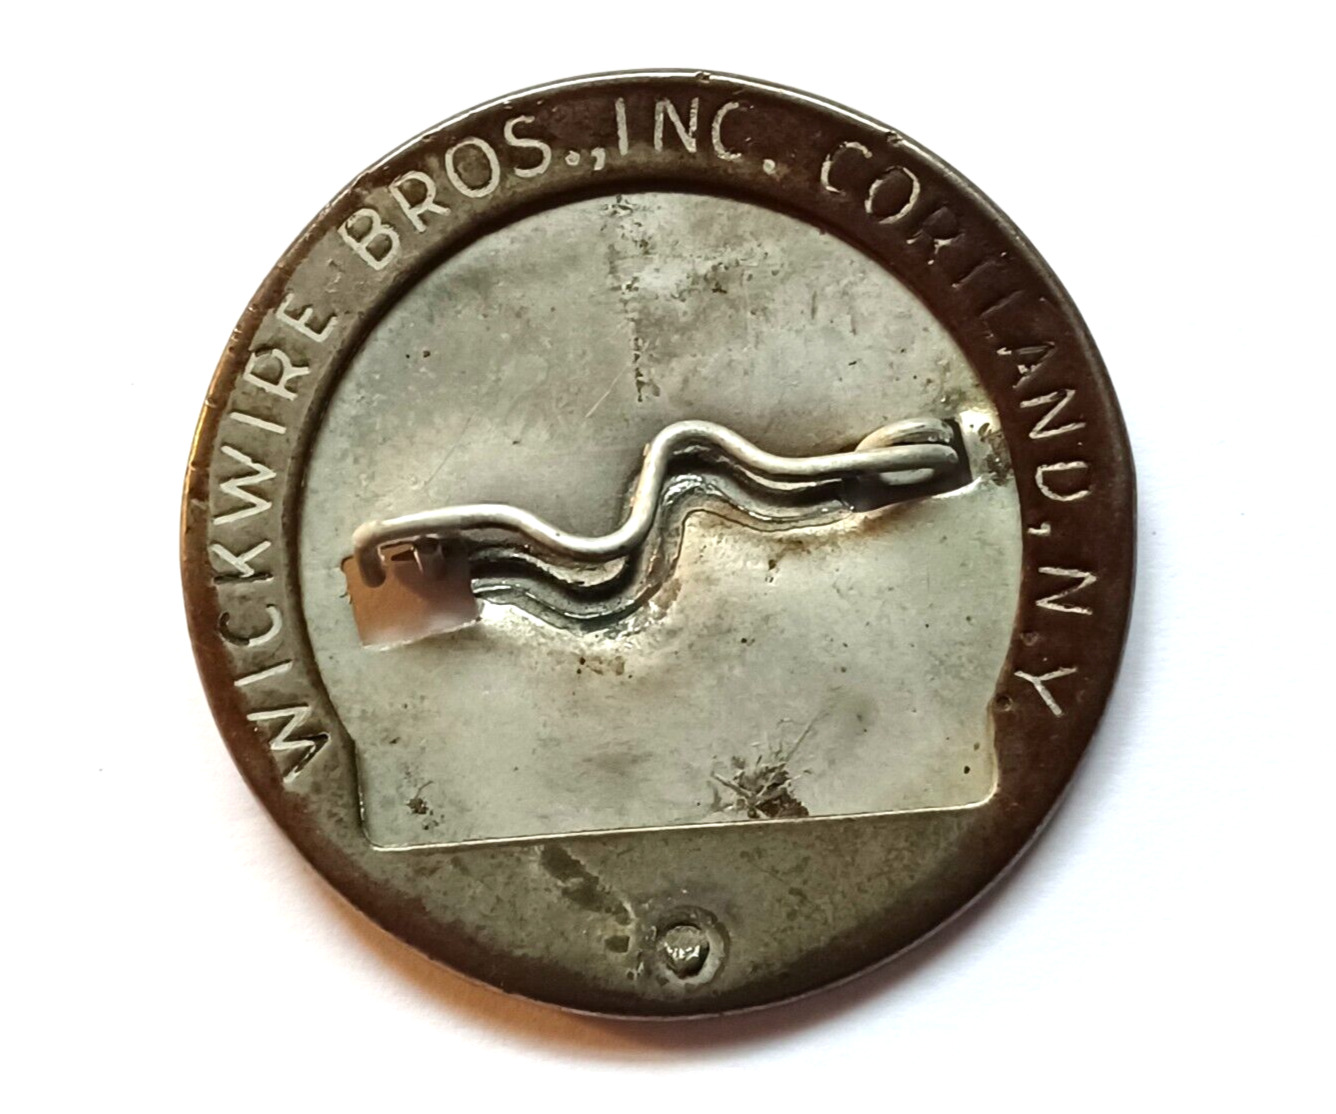 Vintage Wickwire Bros. Inc. Cortland N.Y. Employee Badge